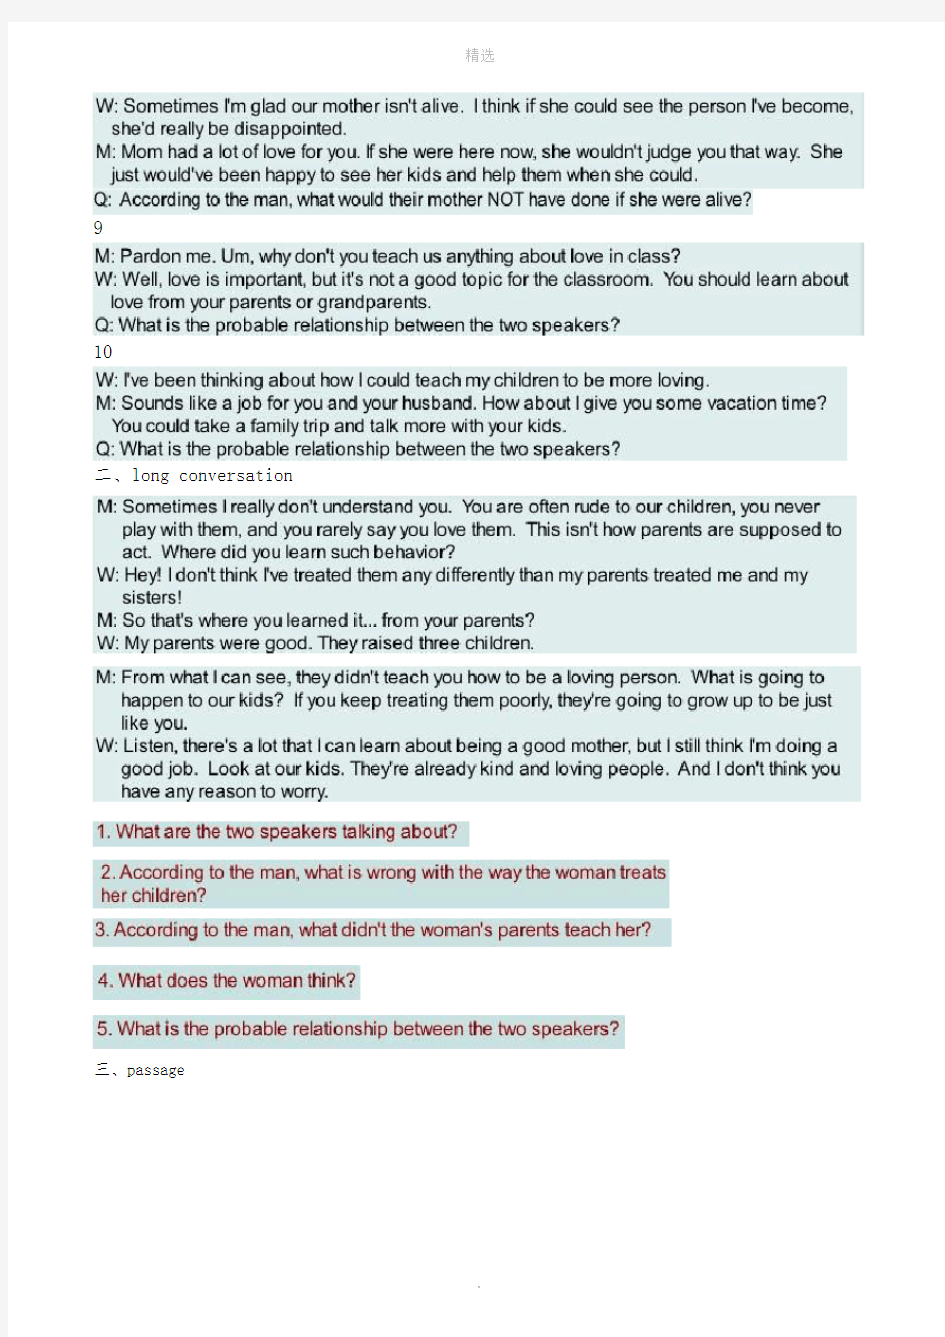 新视野大学英语听说教程3(第二版)听力原文及答案1-10全